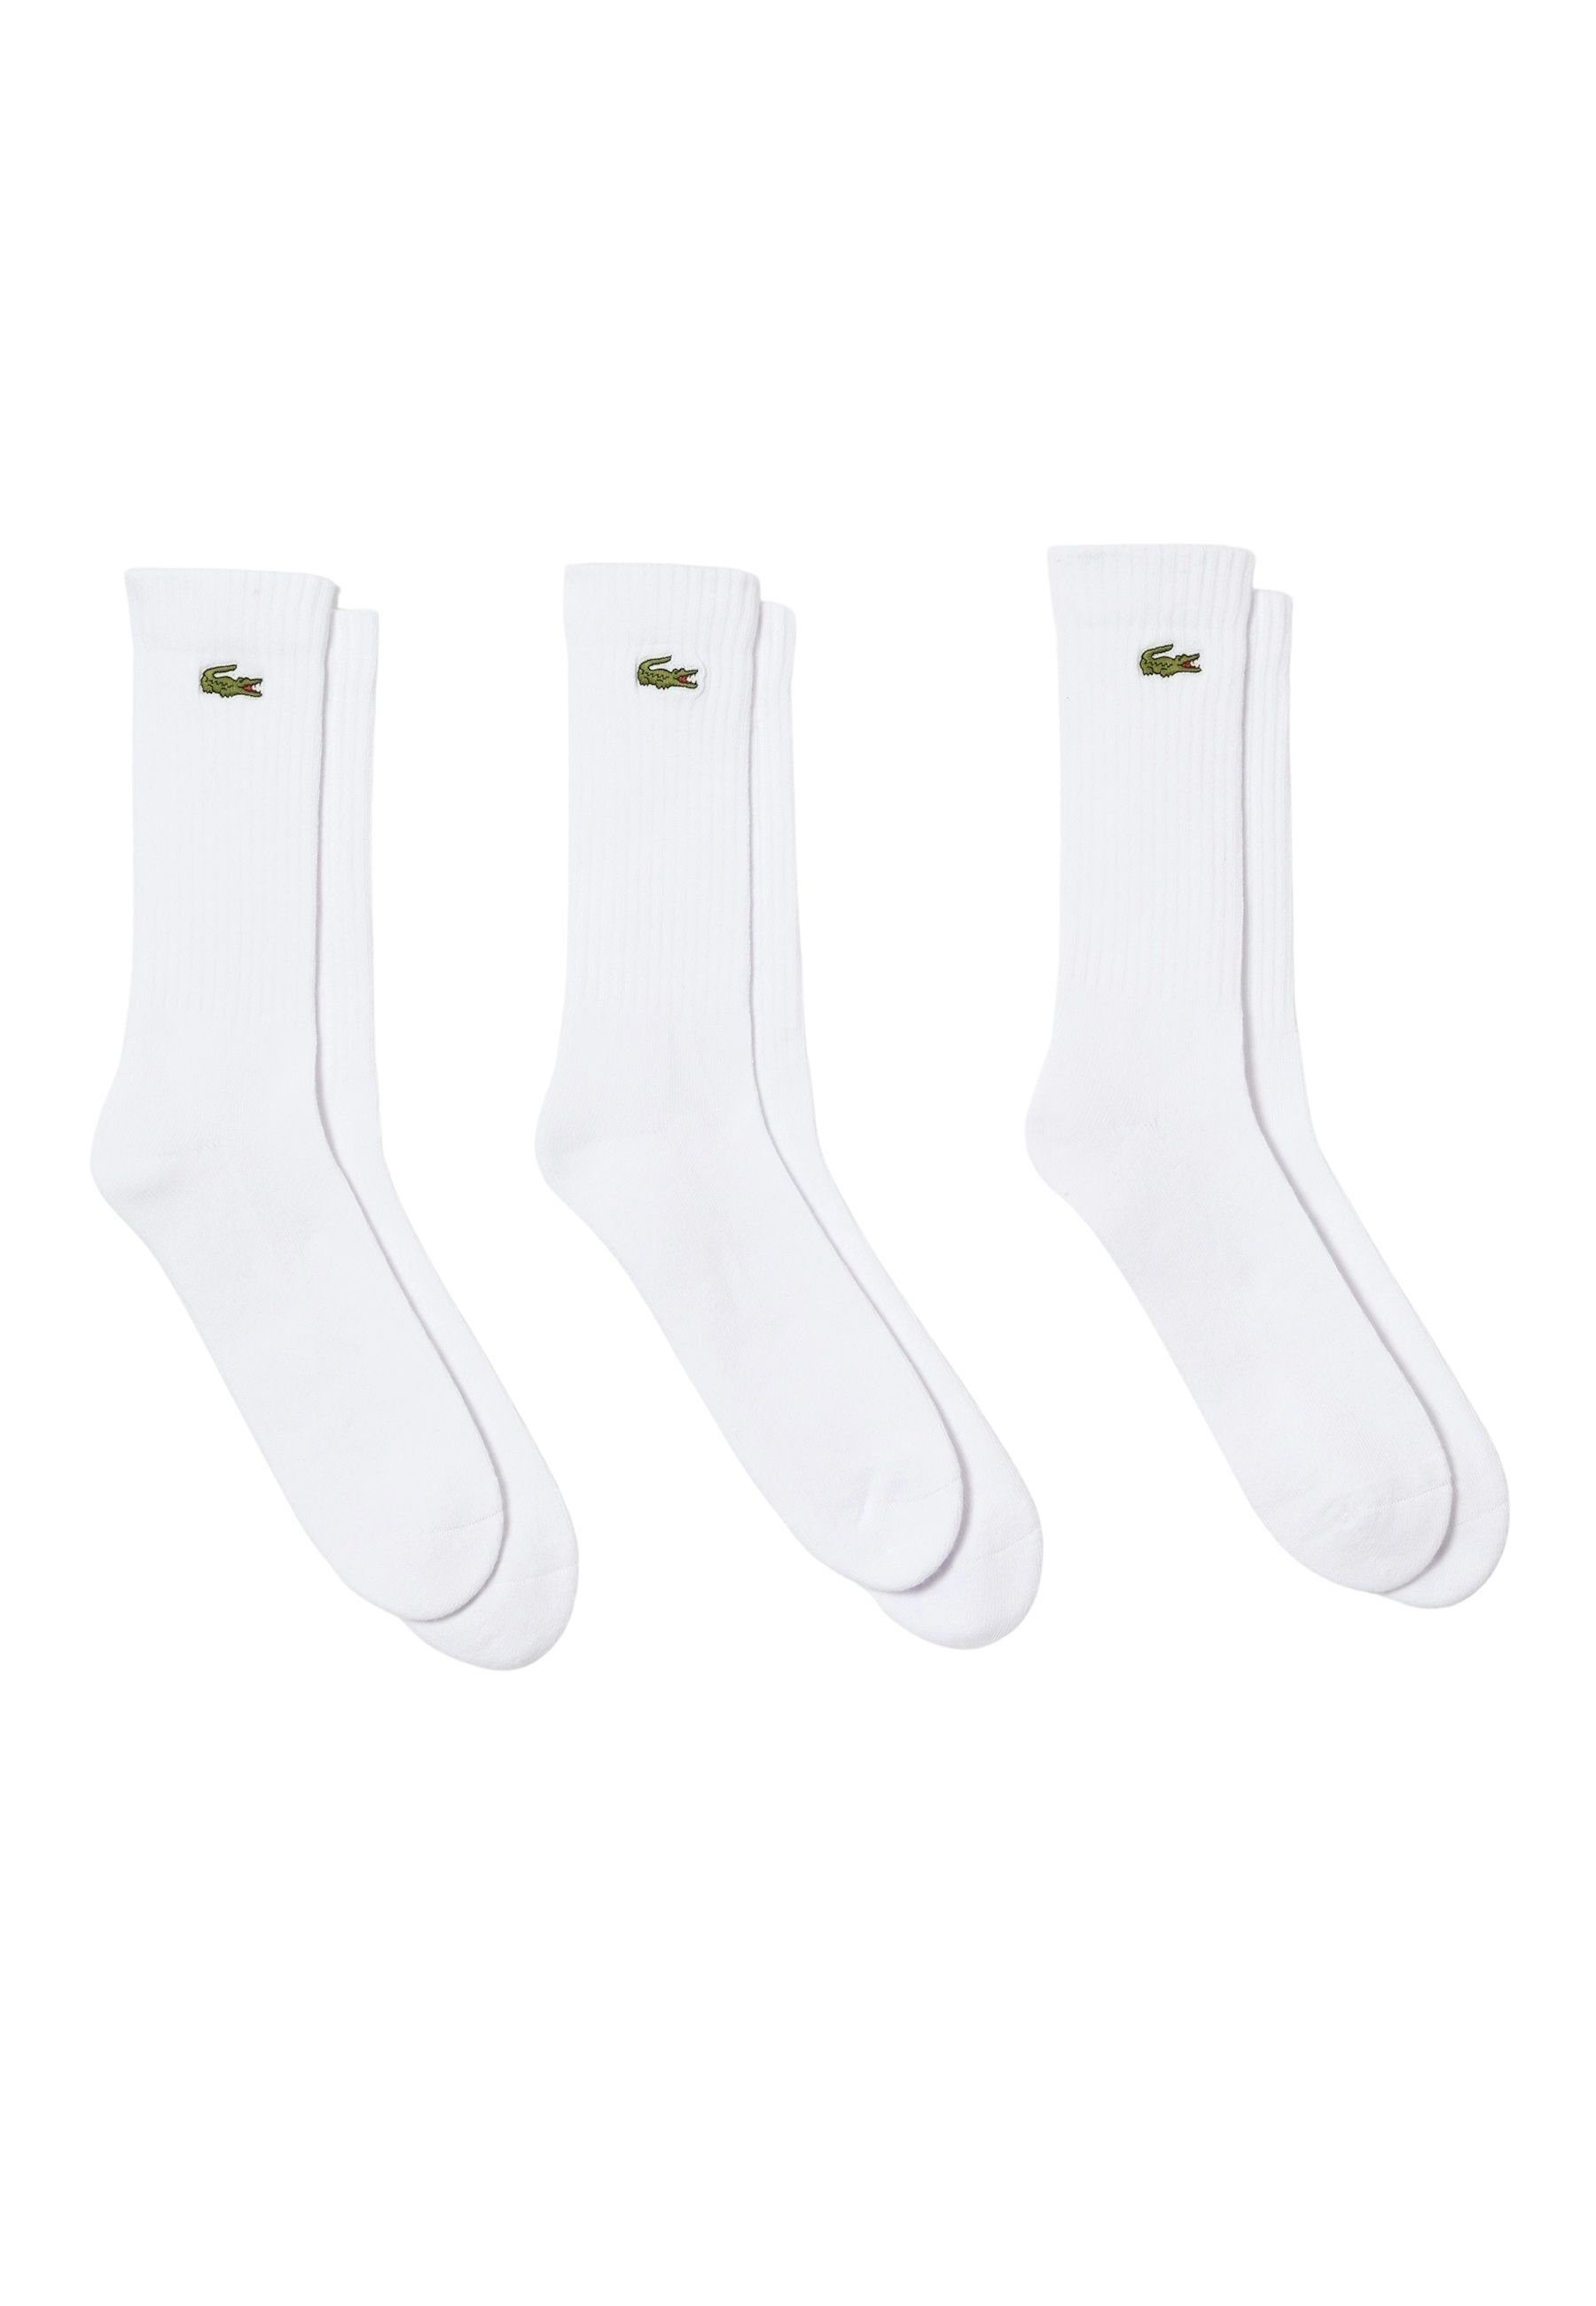 Socken Lacoste Permanent Socken hohe Dreierpack Offer (3-Paar) Socken weiß